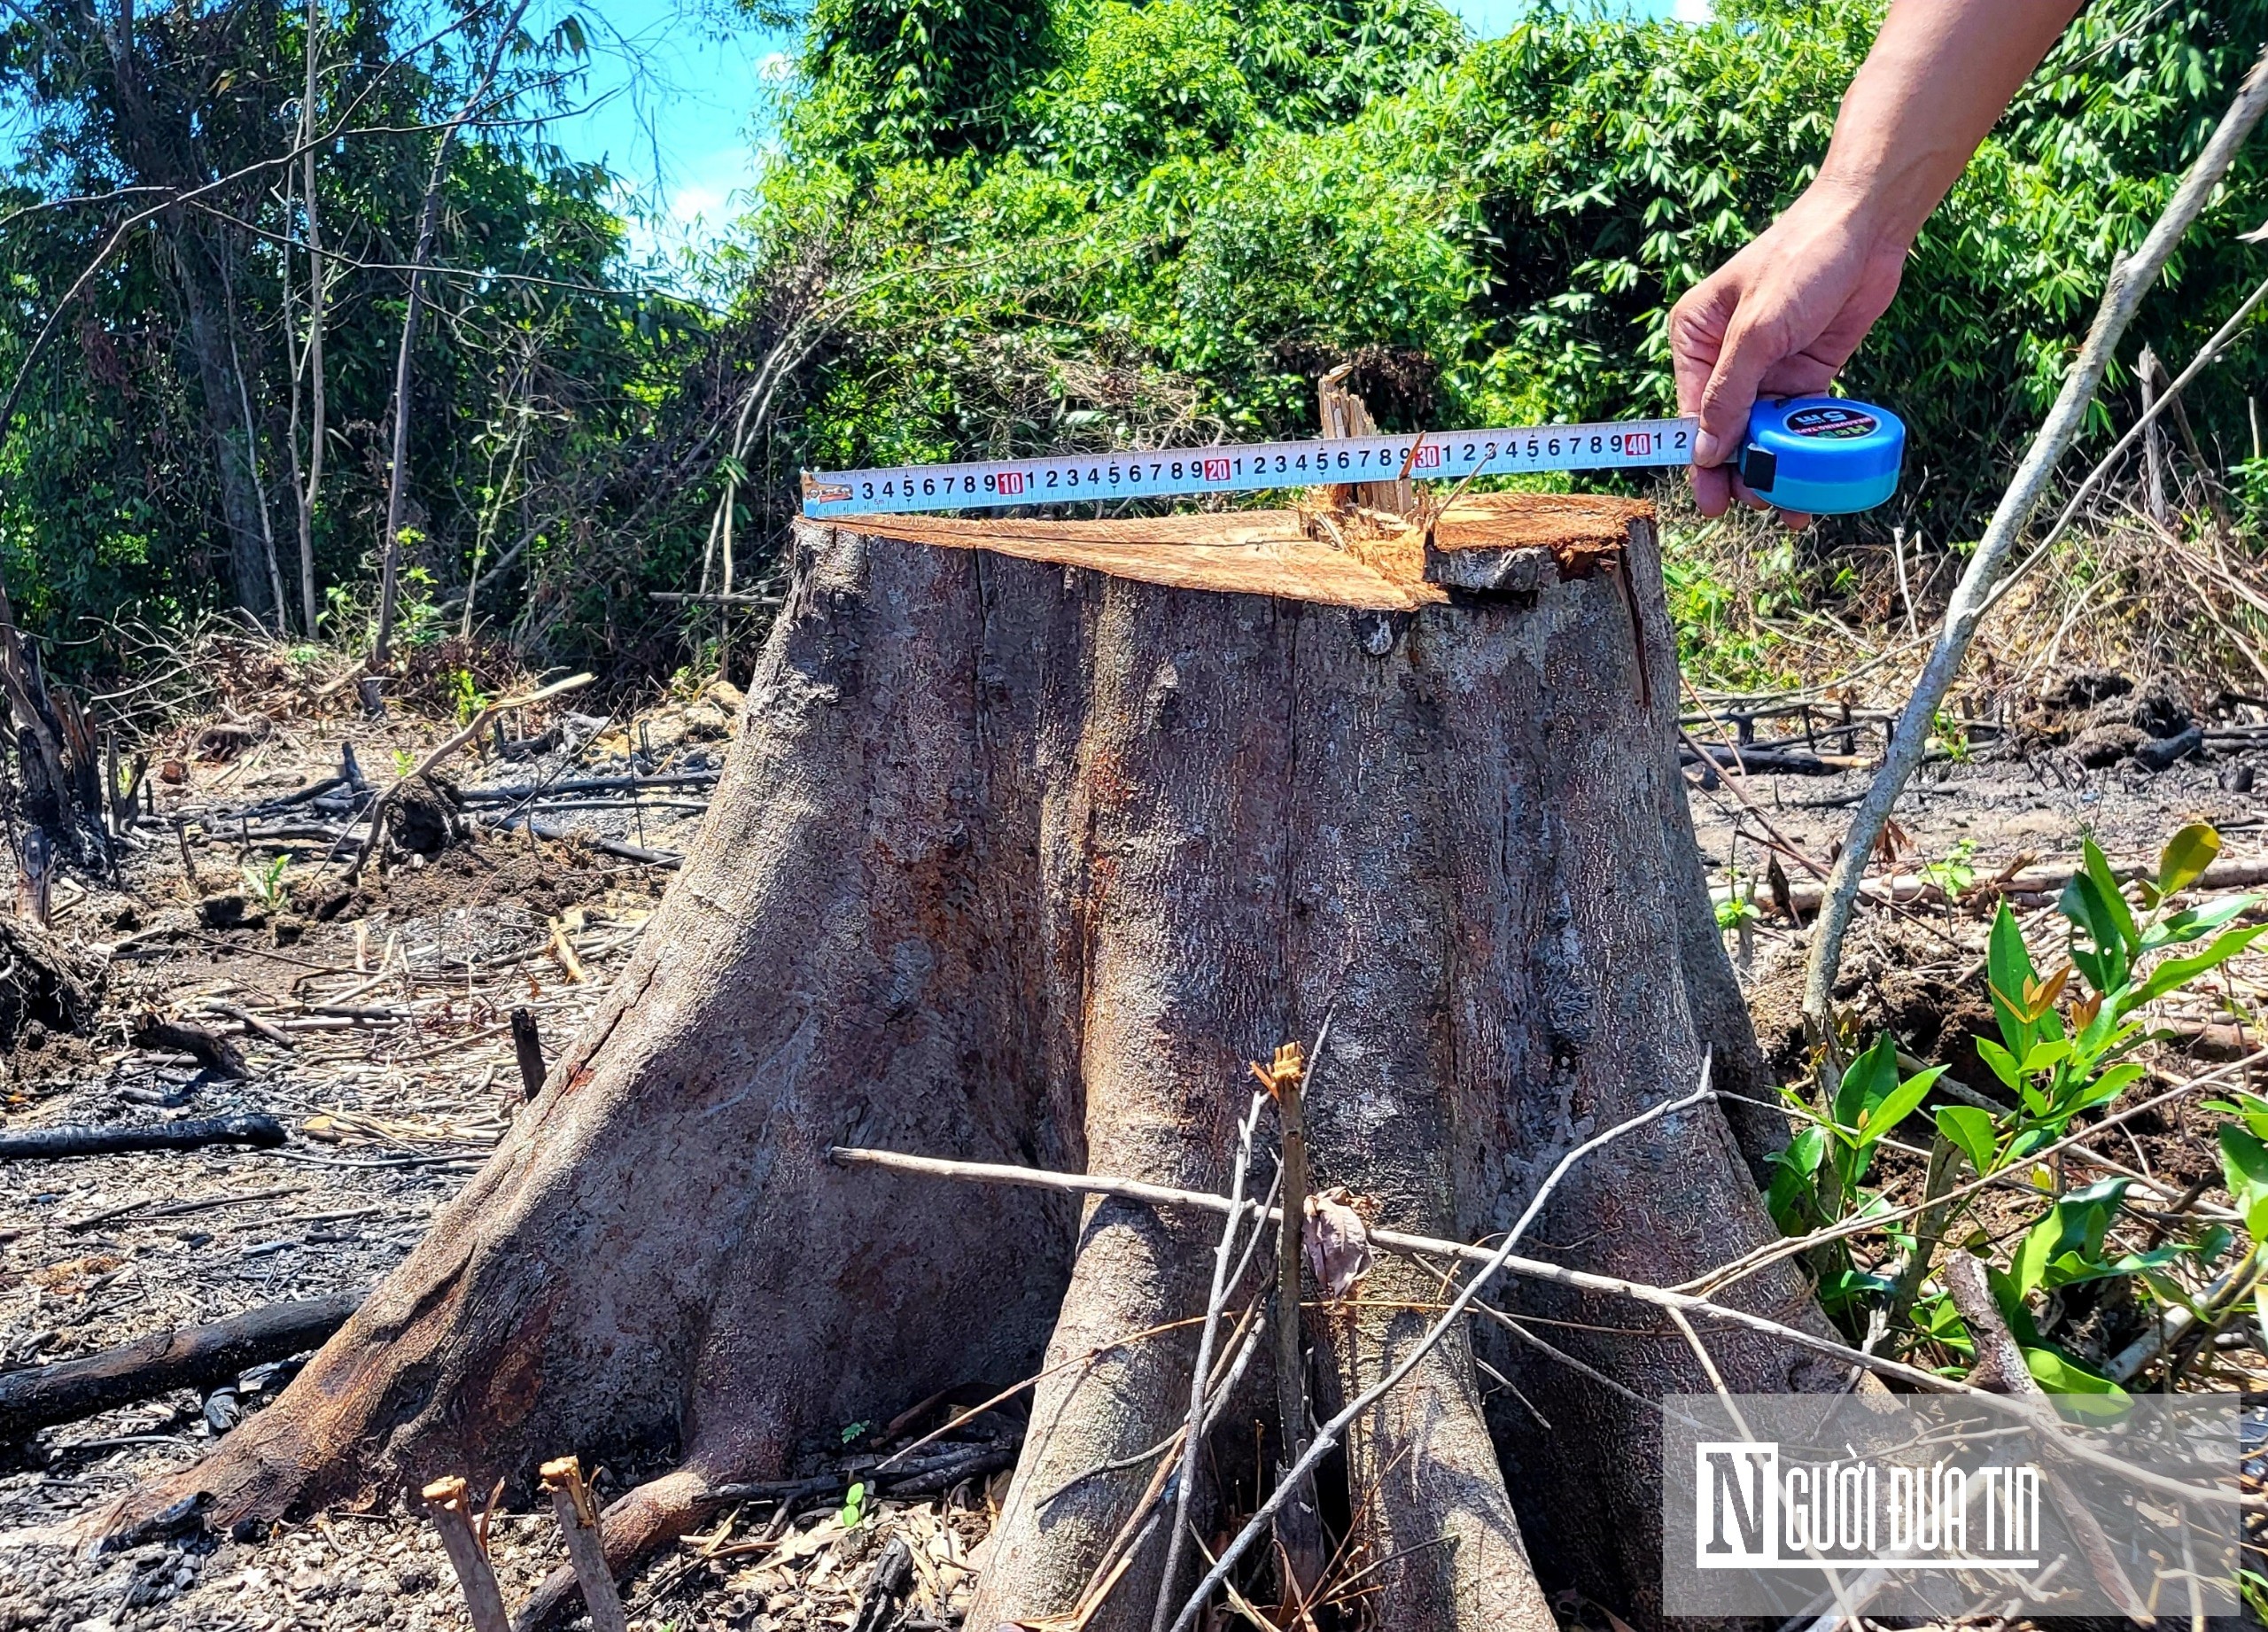 Môi trường - Chấn động: Cán bộ BQL bảo tồn Kẻ Gỗ chặt phá rừng nguyên sinh